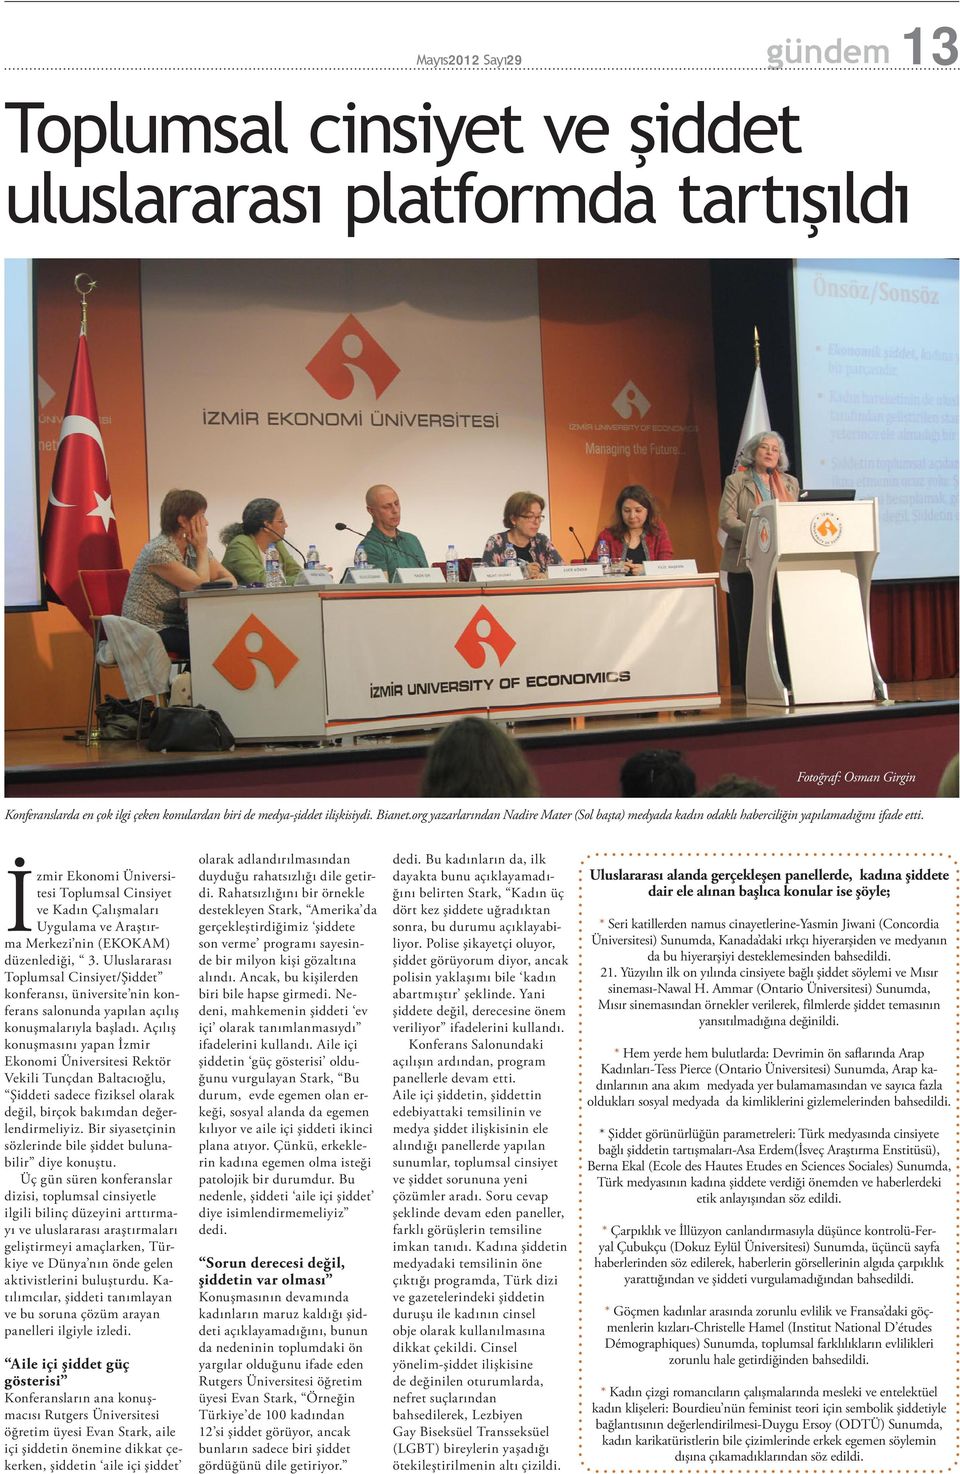 İzmir Ekonomi Üniversitesi Toplumsal Cinsiyet ve Kadın Çalışmaları Uygulama ve Araştırma Merkezi nin (EKOKAM) düzenlediği, 3.